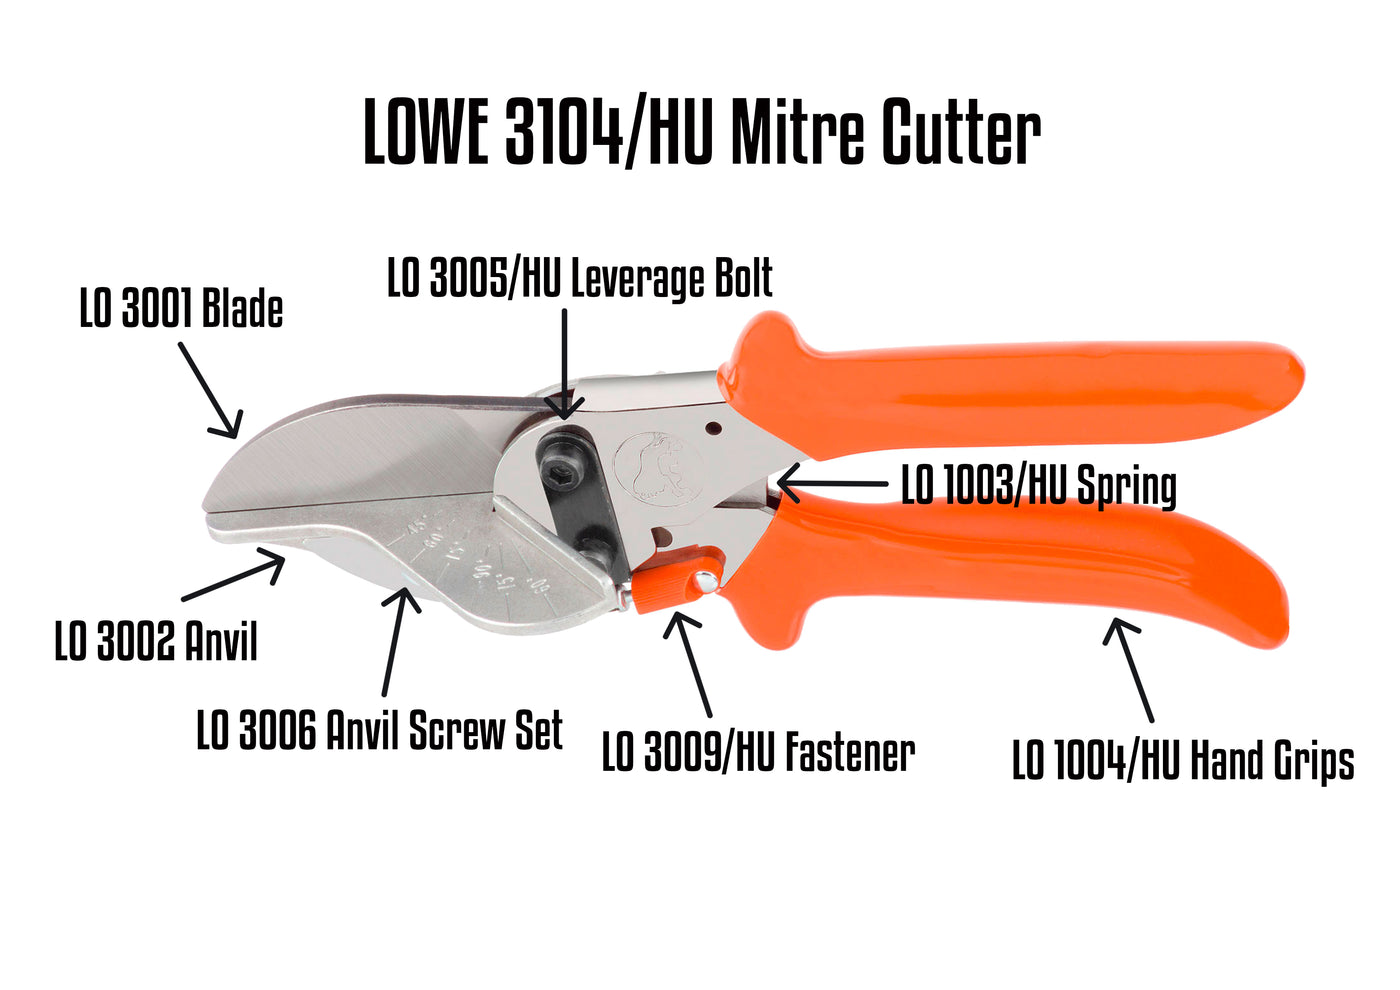 LO 3104/HU Mitre Cutter Parts Guide